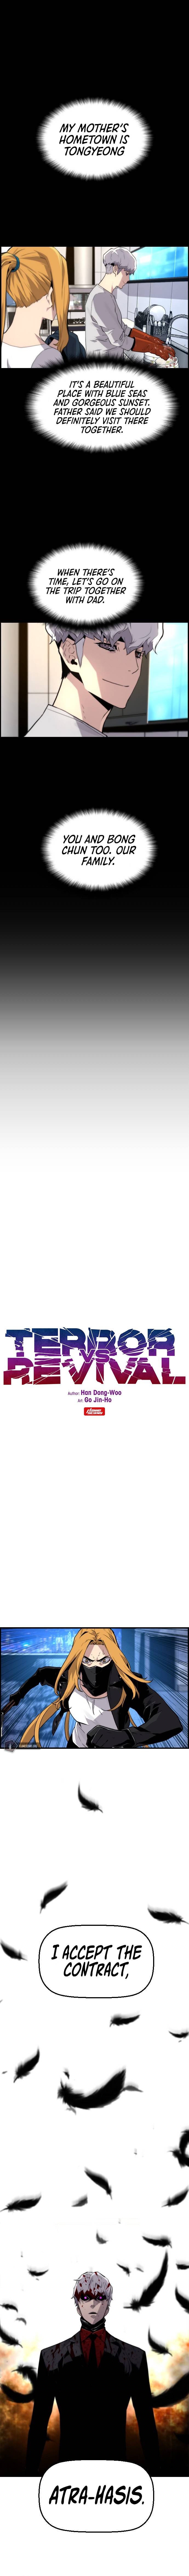 Terror Vs Revival - Page 2